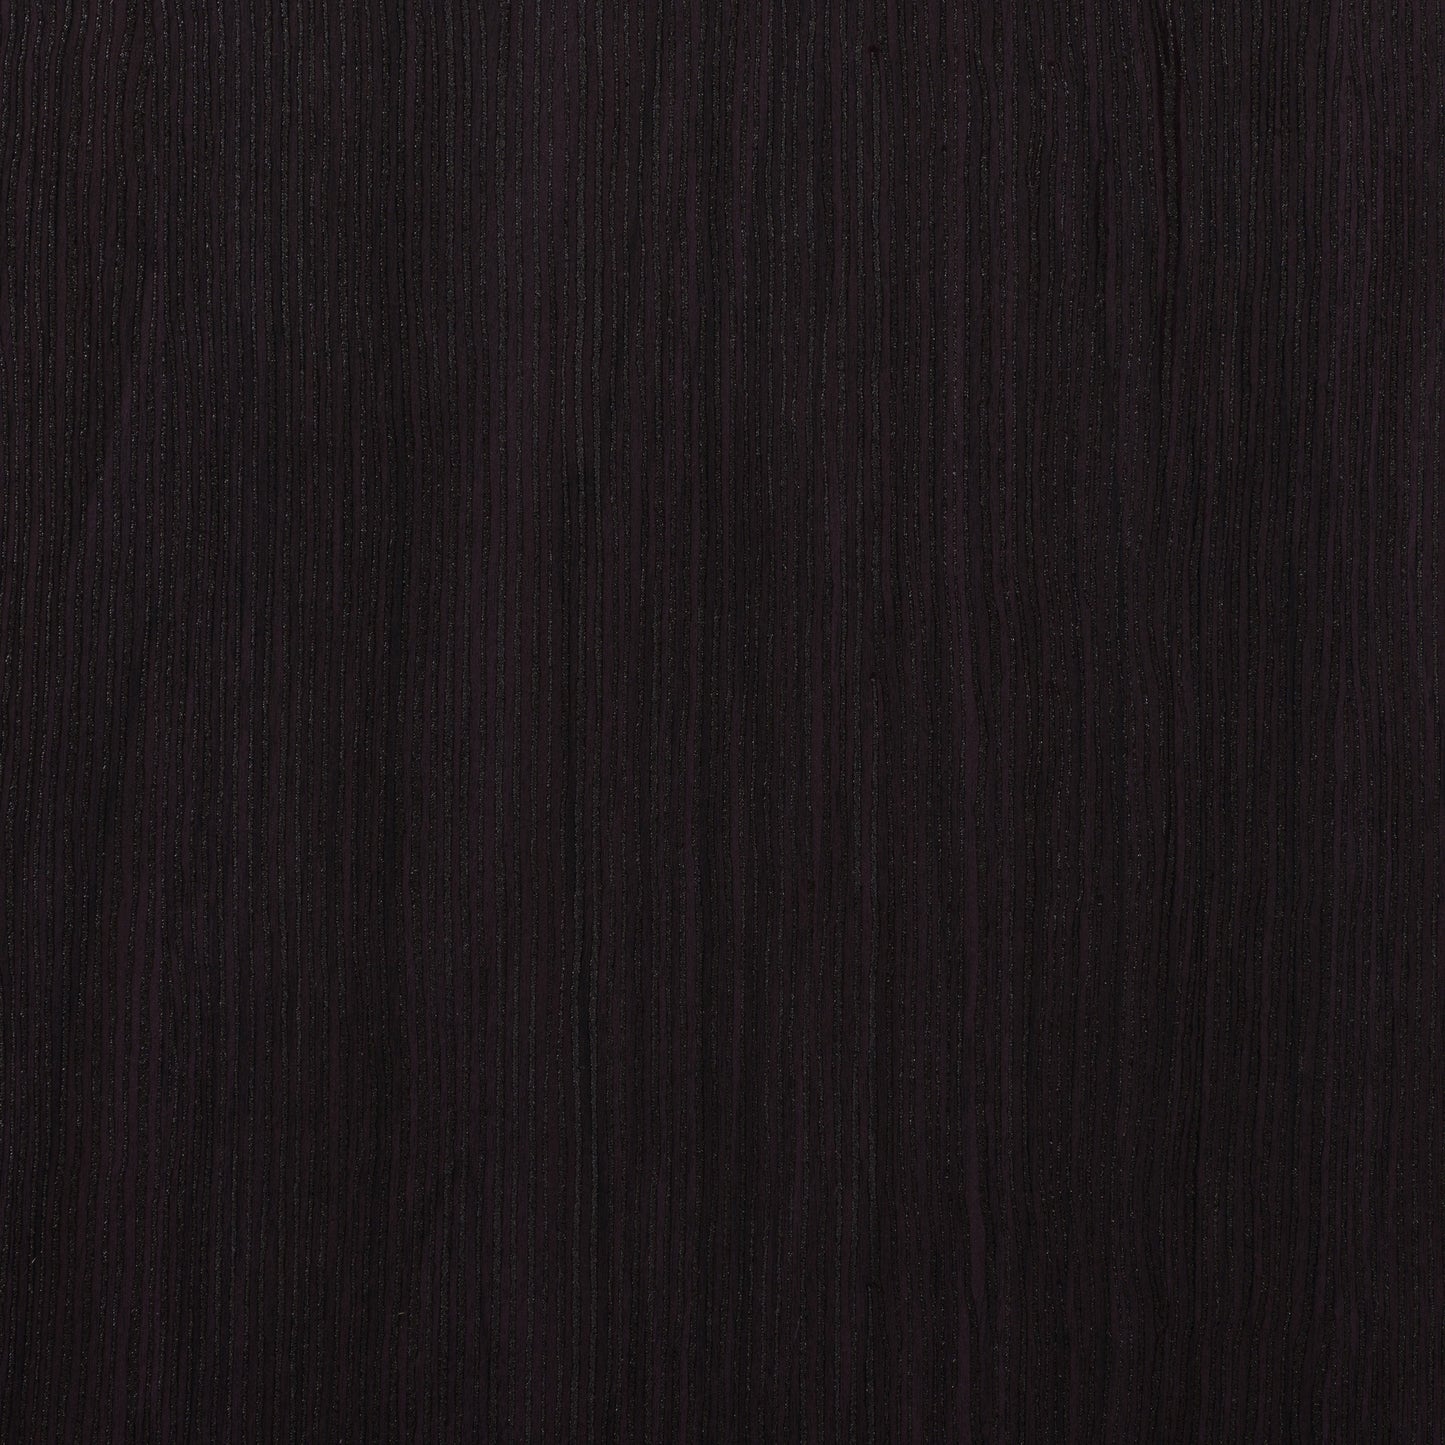 black oak 8 Drawer Dresser Newport Collection detail image by CorLiving#color_black-oak